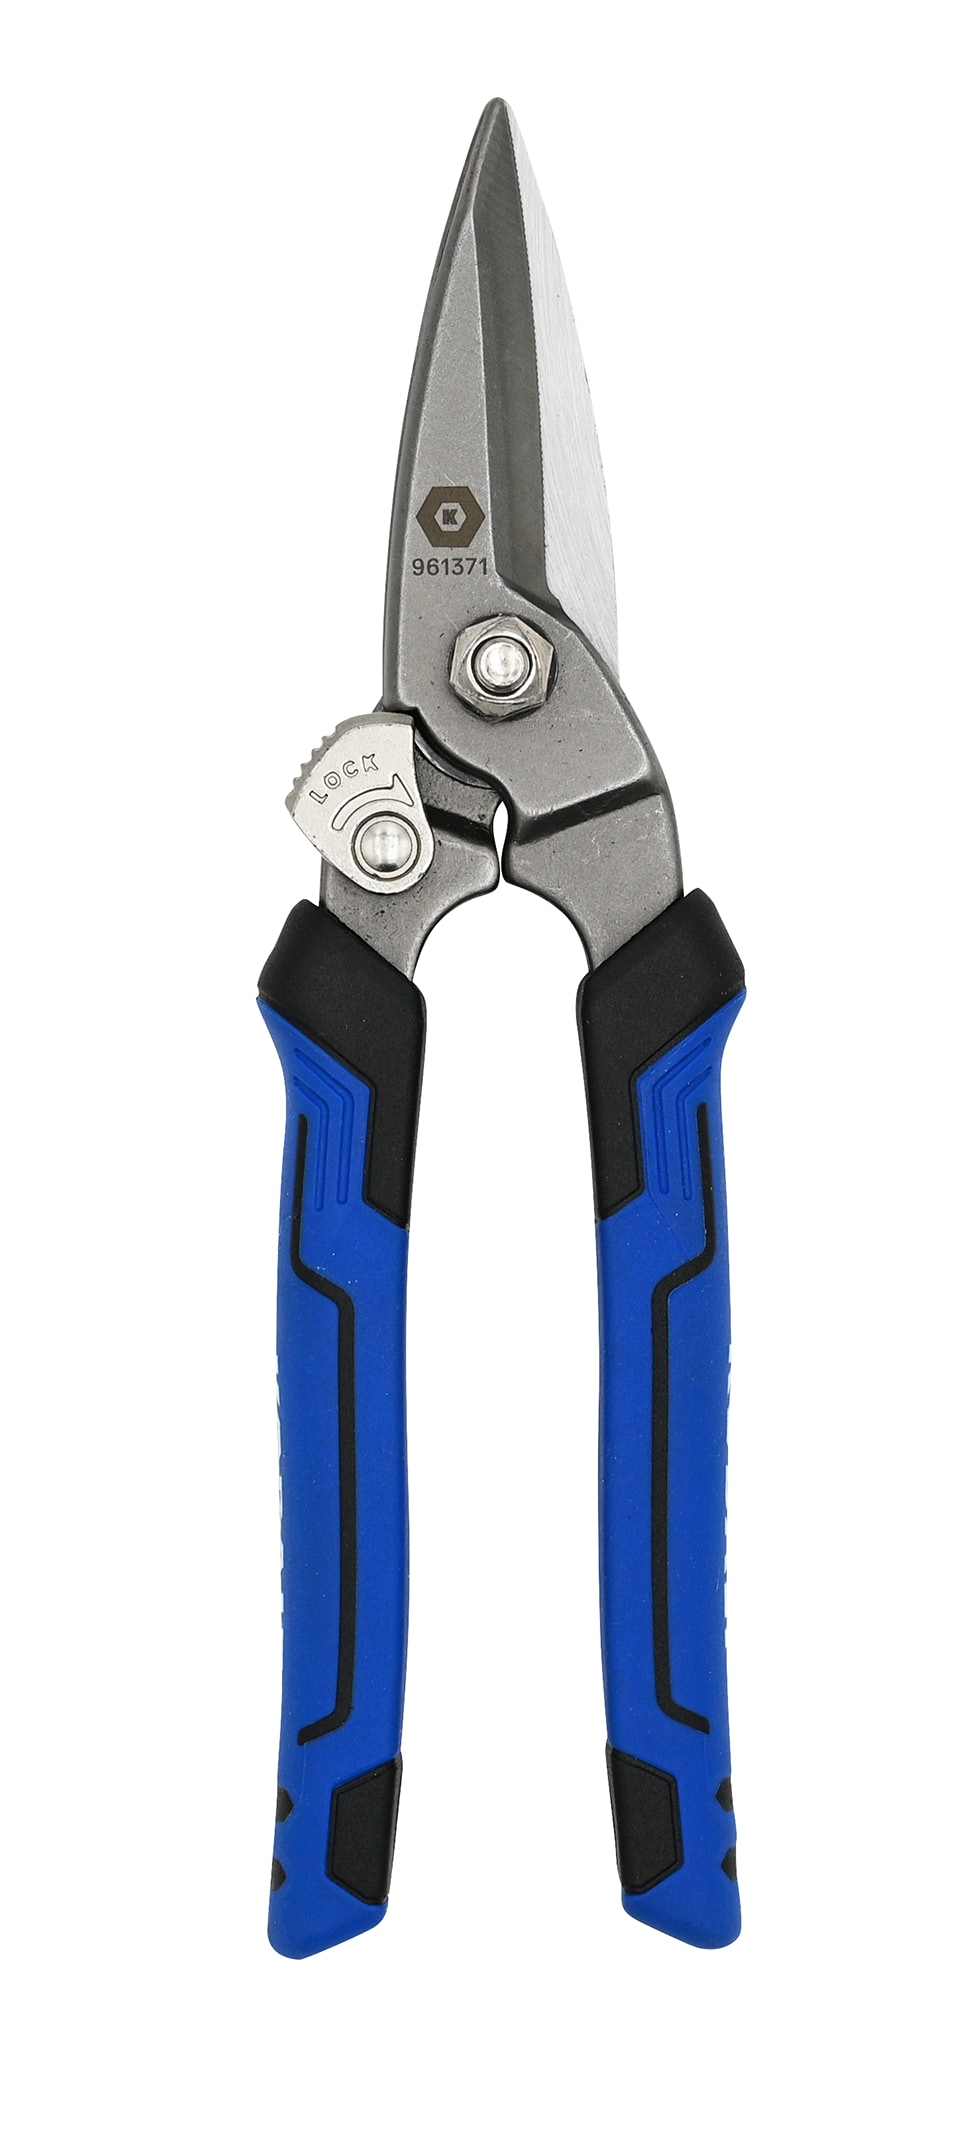 Kobalt Stainless Steel 2 Pc Non-slip Scissors in the Scissors